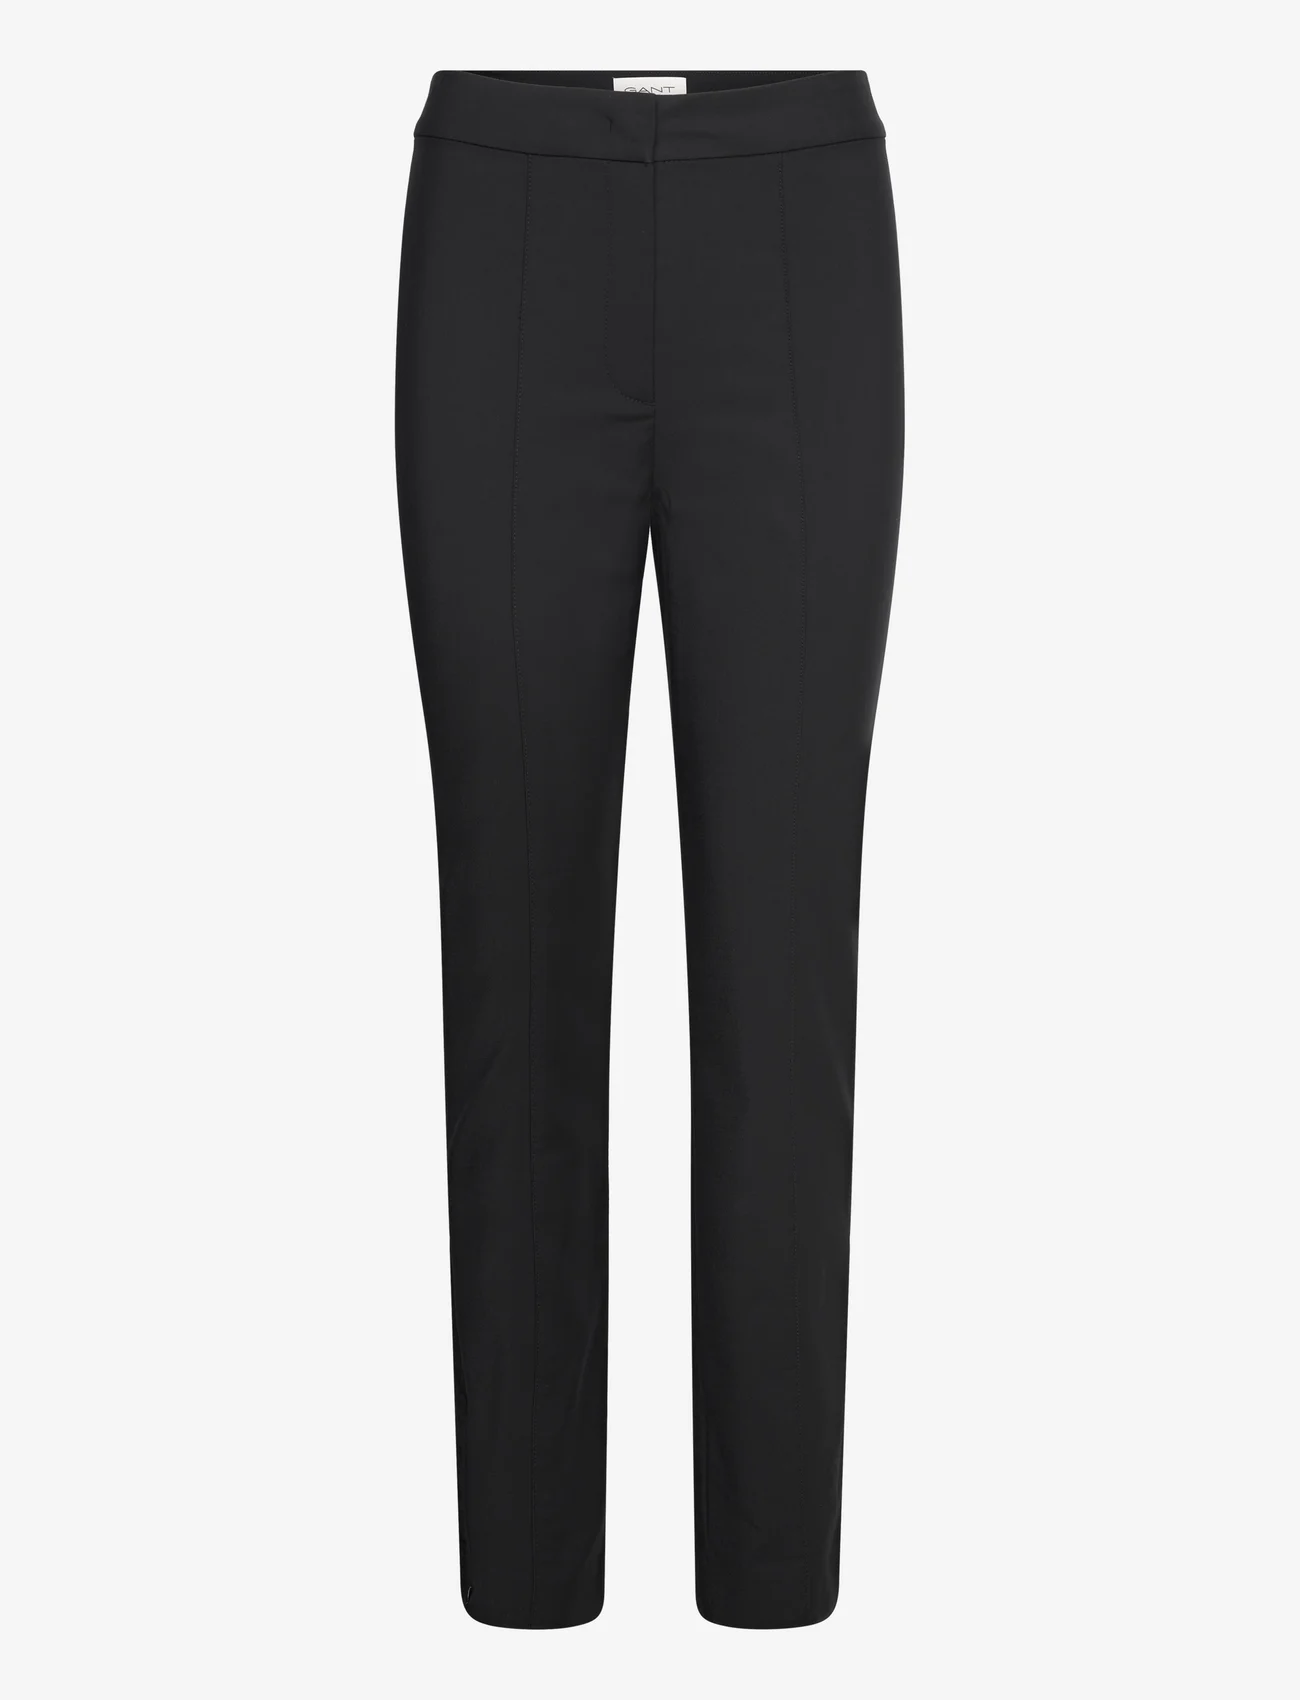 GANT - SLIM PINTUCK ZIP PANTS - slim fit trousers - ebony black - 0